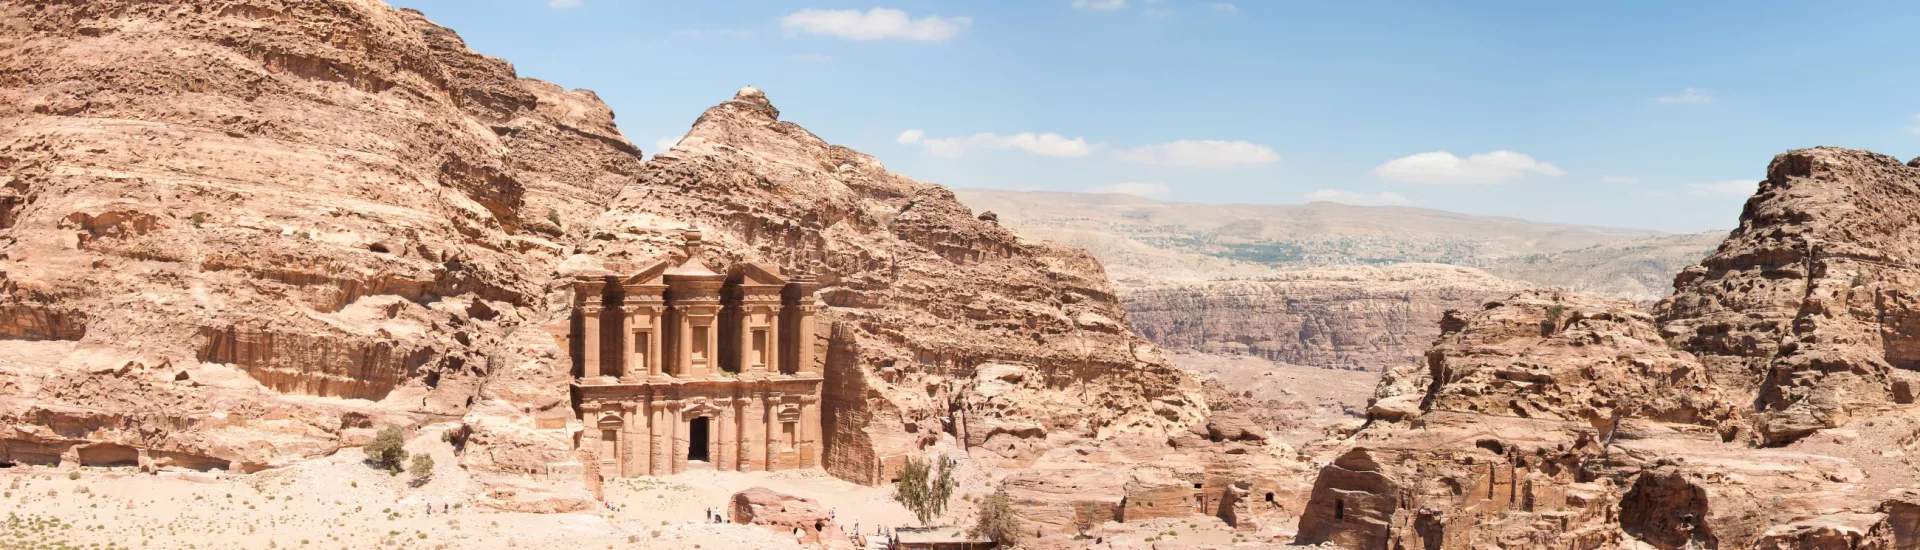 The Monastarty, Petra, Jordan